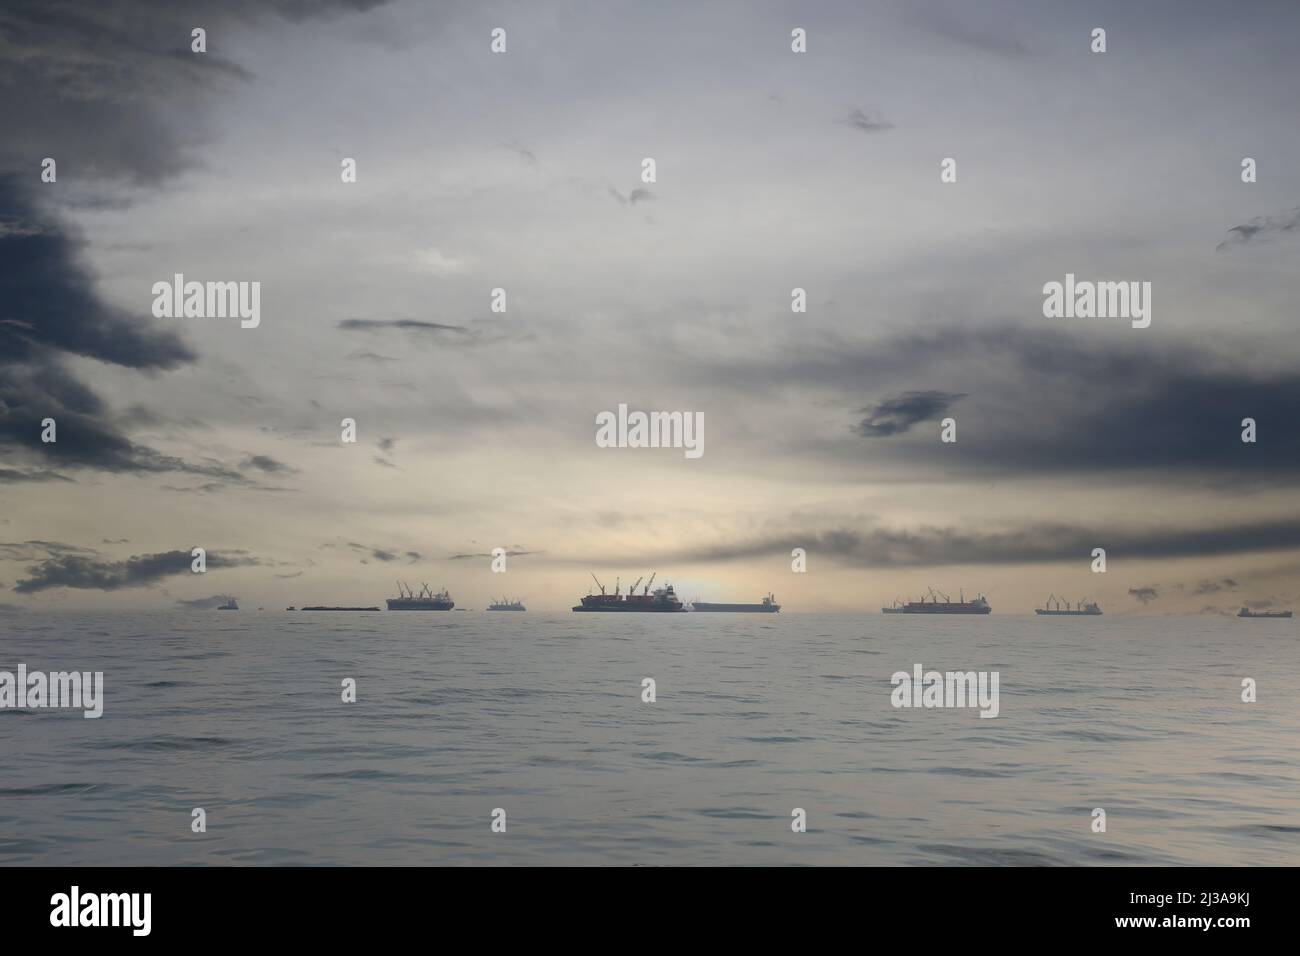 Los mares costeros alrededor de Koh Sichang, Tailandia están abarrotados de barcos de carga en un día despejado. Foto de stock